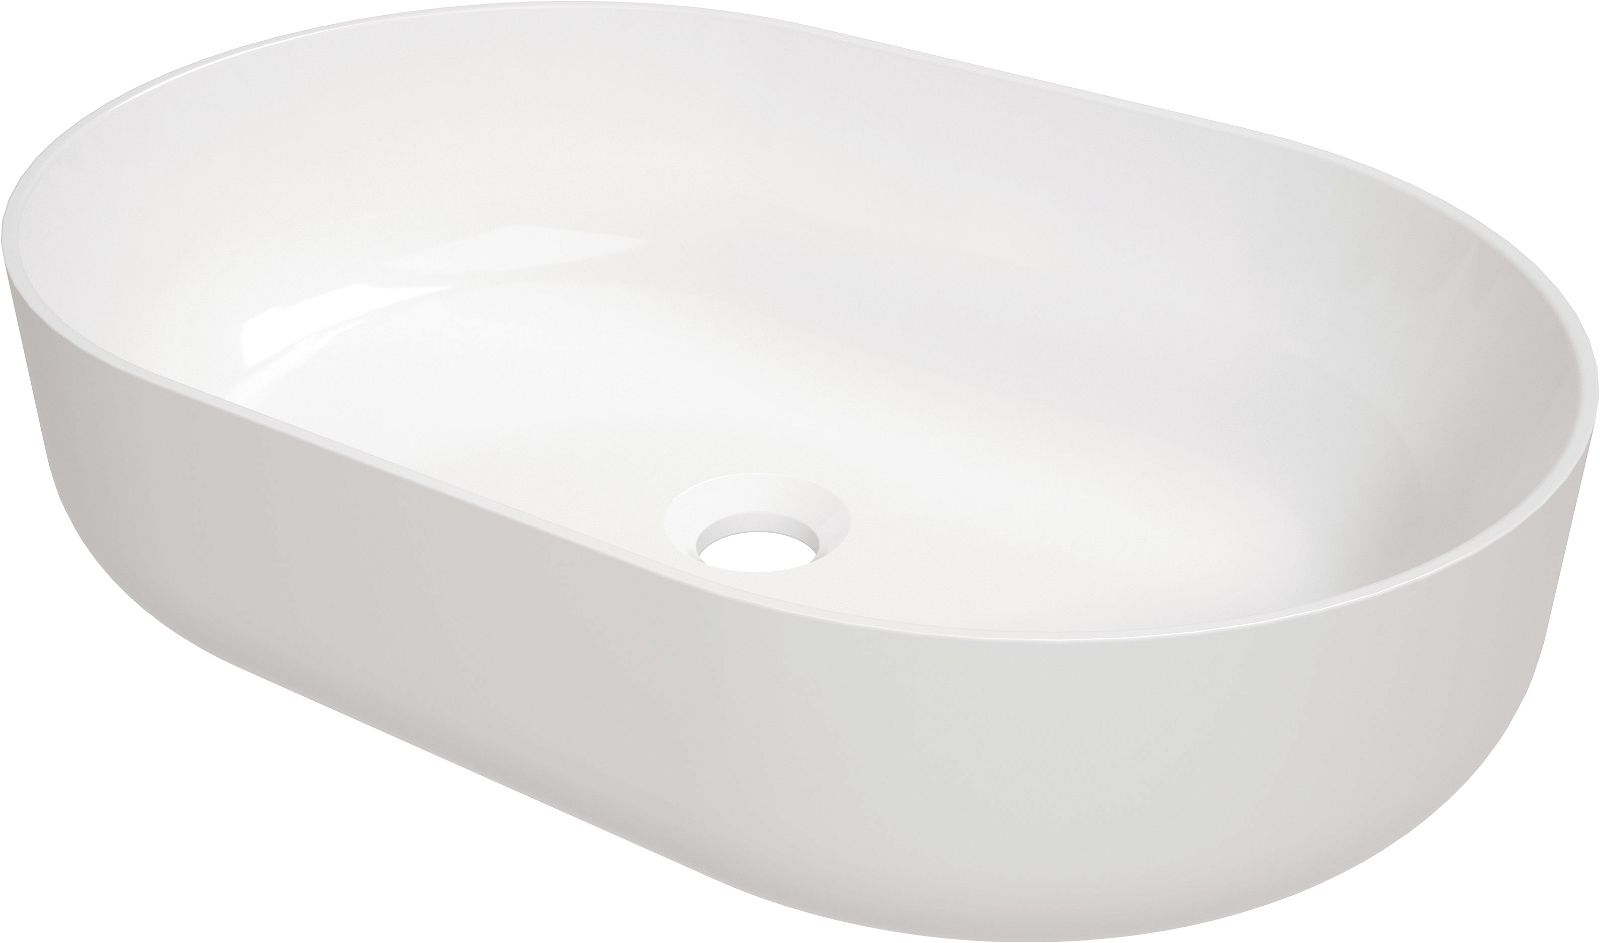 Ceramic washbasin, countertop - CGR_6U6S - Główne zdjęcie produktowe